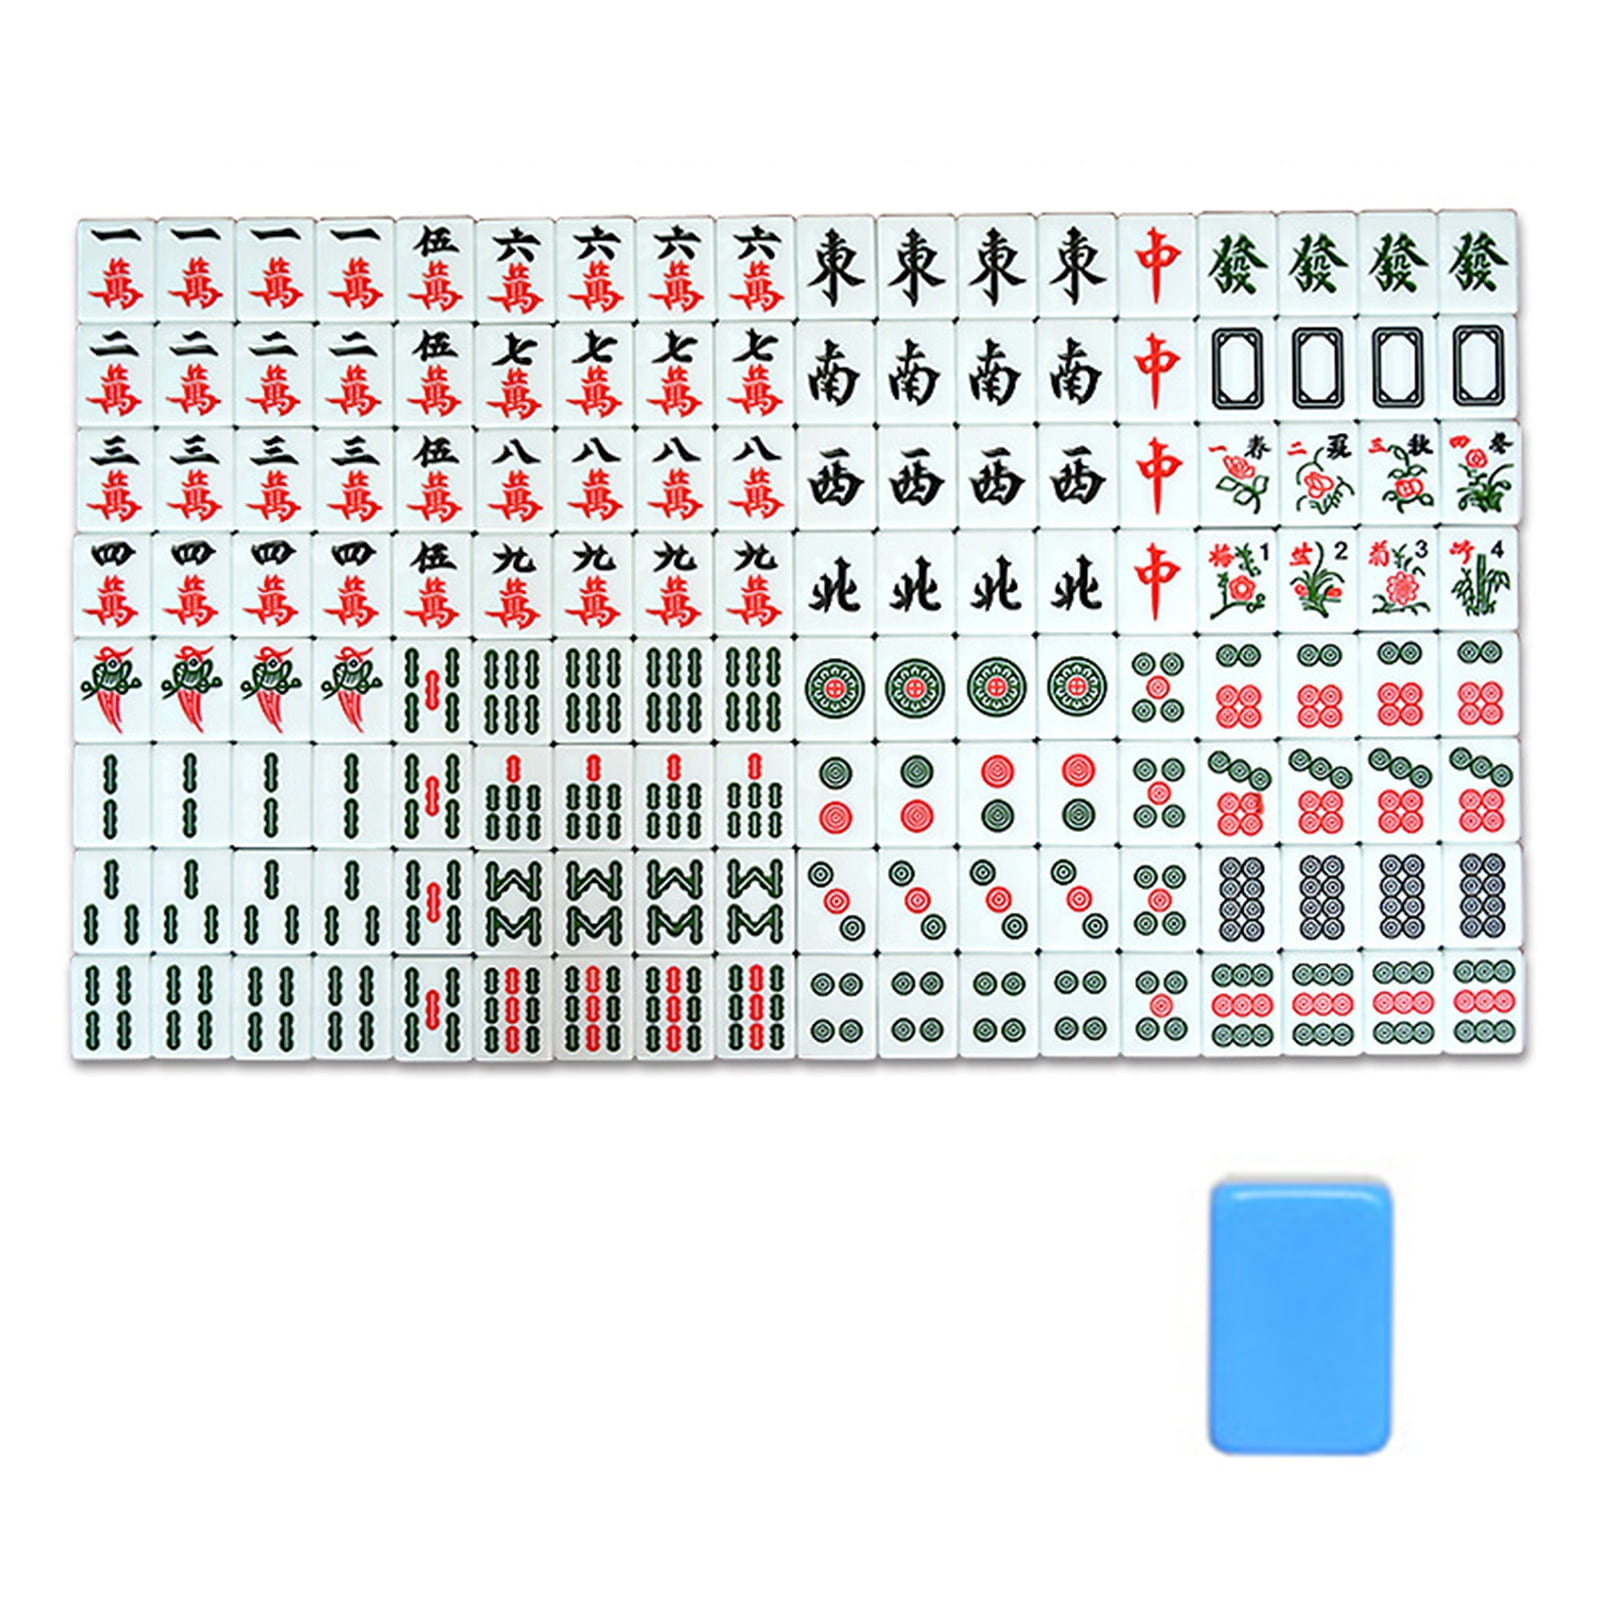 Porcelana azul e branca estilo Mahjong Poker 144pcs portátil Mahjong  Solitaire viajando fora jogando jogo para